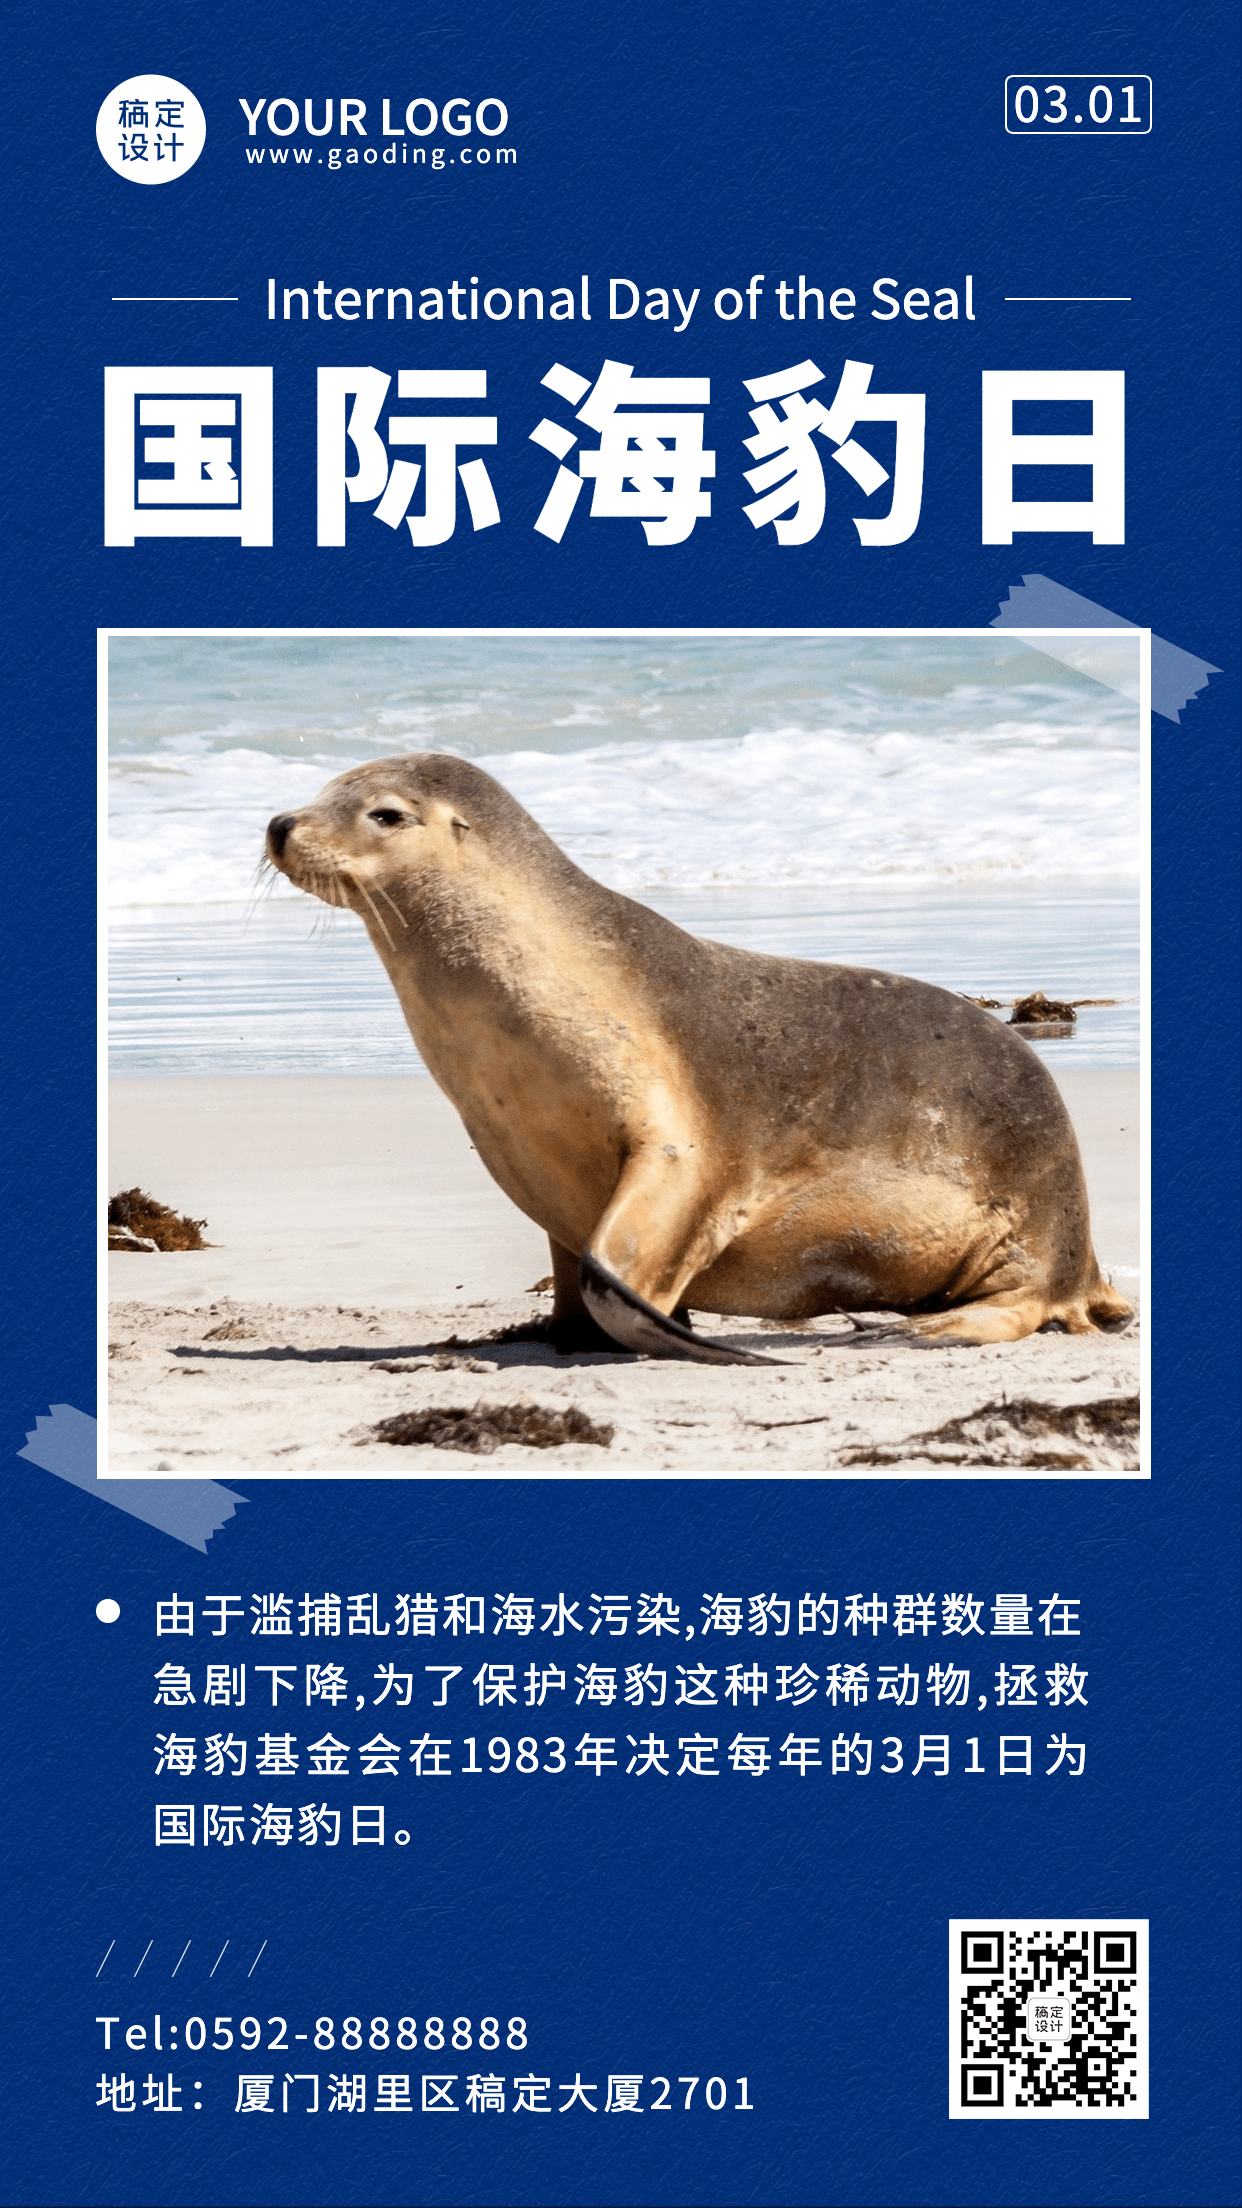 3.1国际海豹日节日宣传手机海报预览效果